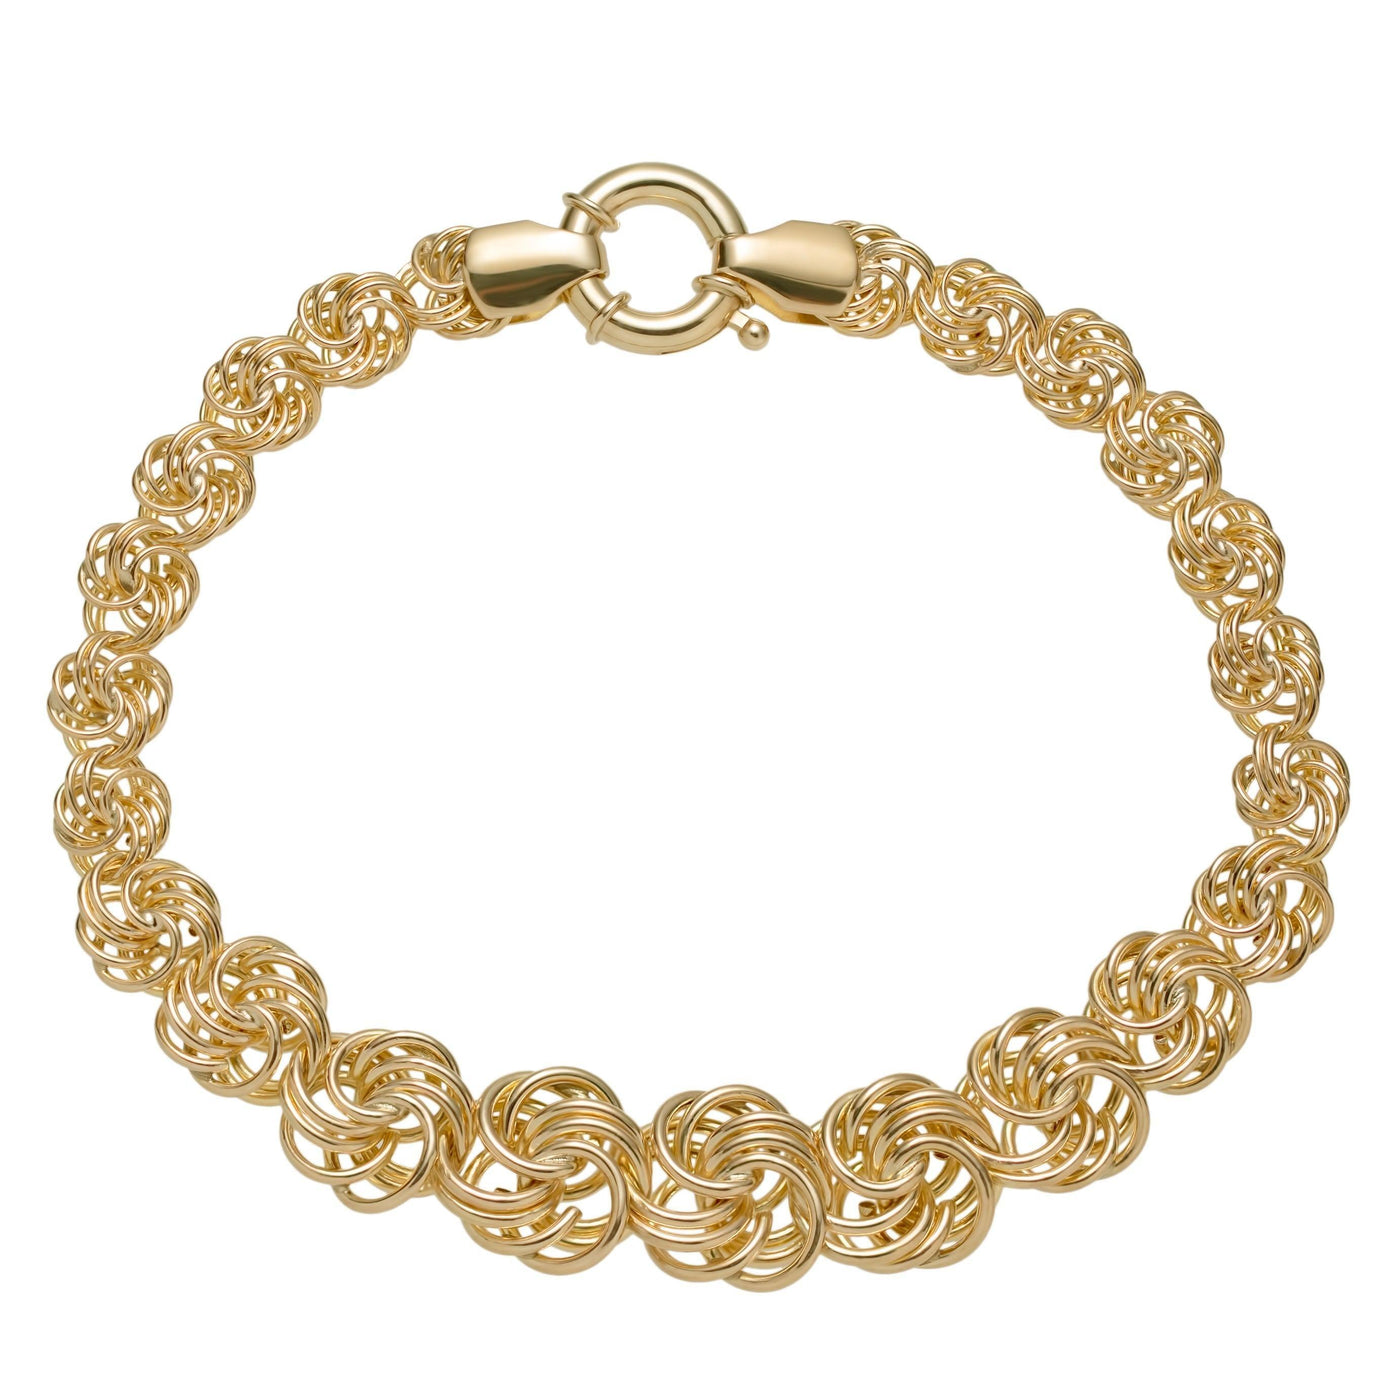 Graduated Rosetta Rose Knot Chain Bracelet Senora Clasp 10K Yellow Gold - bayamjewelry